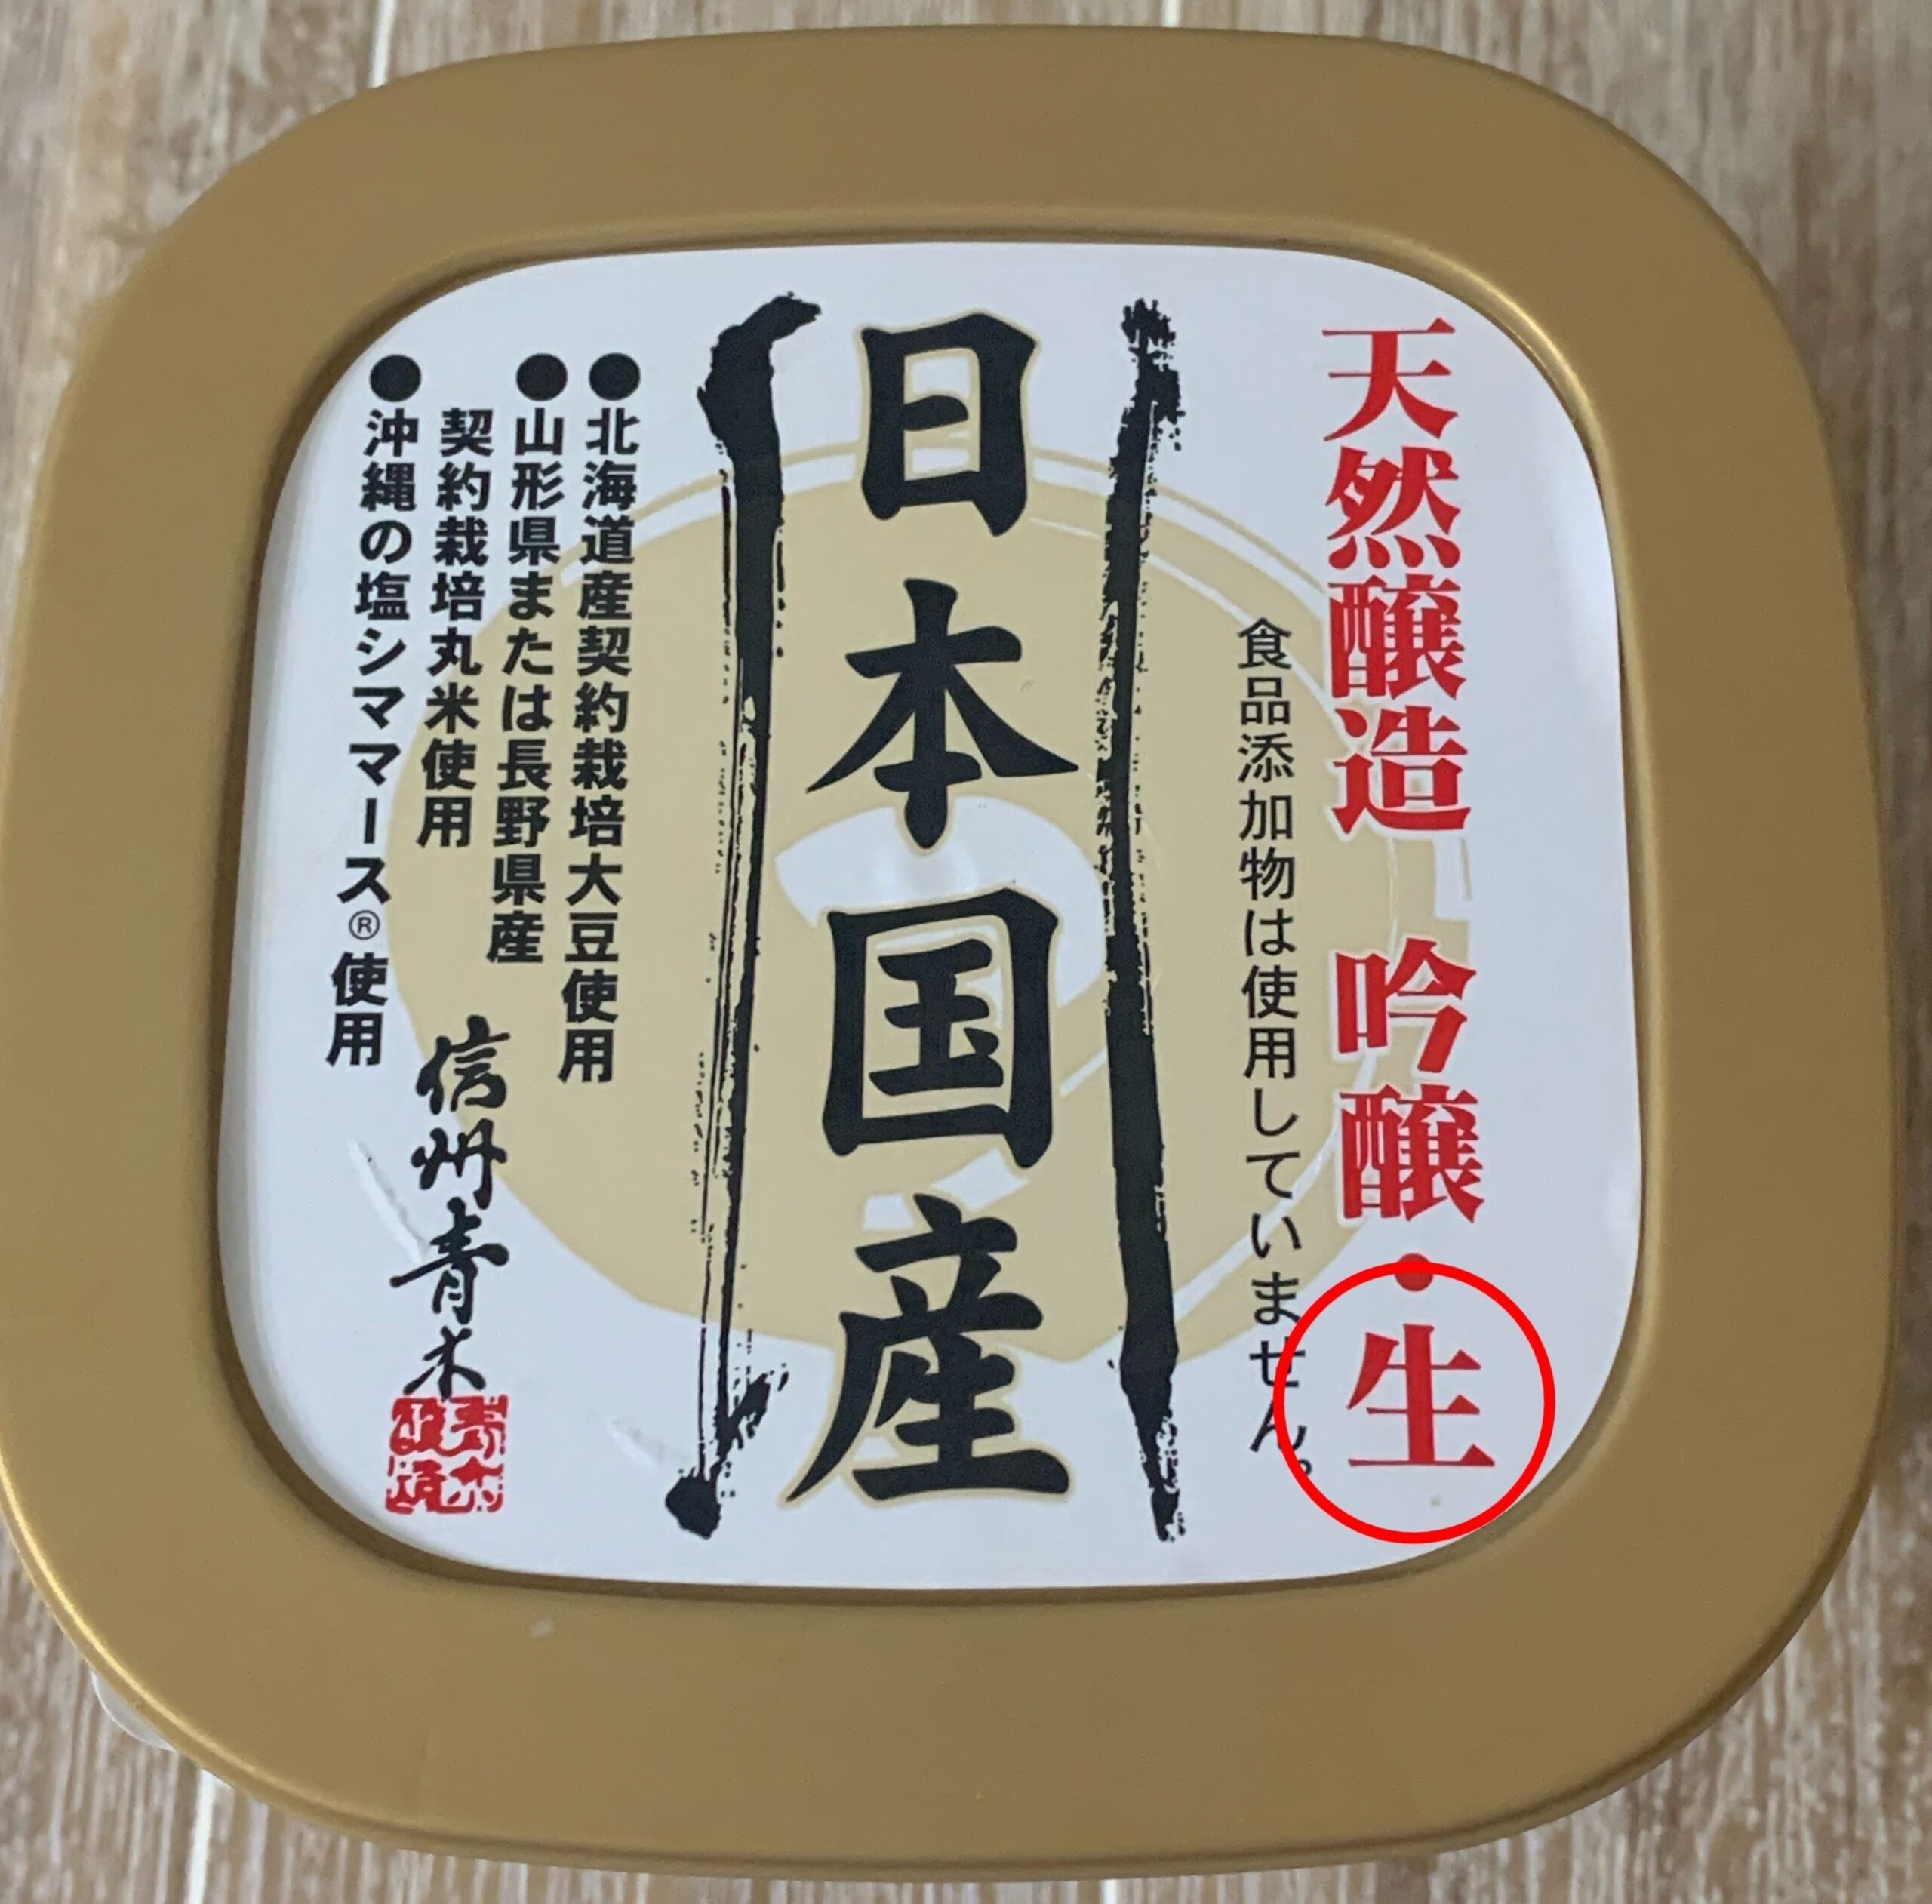 日本国産のパッケージに生味噌の表示